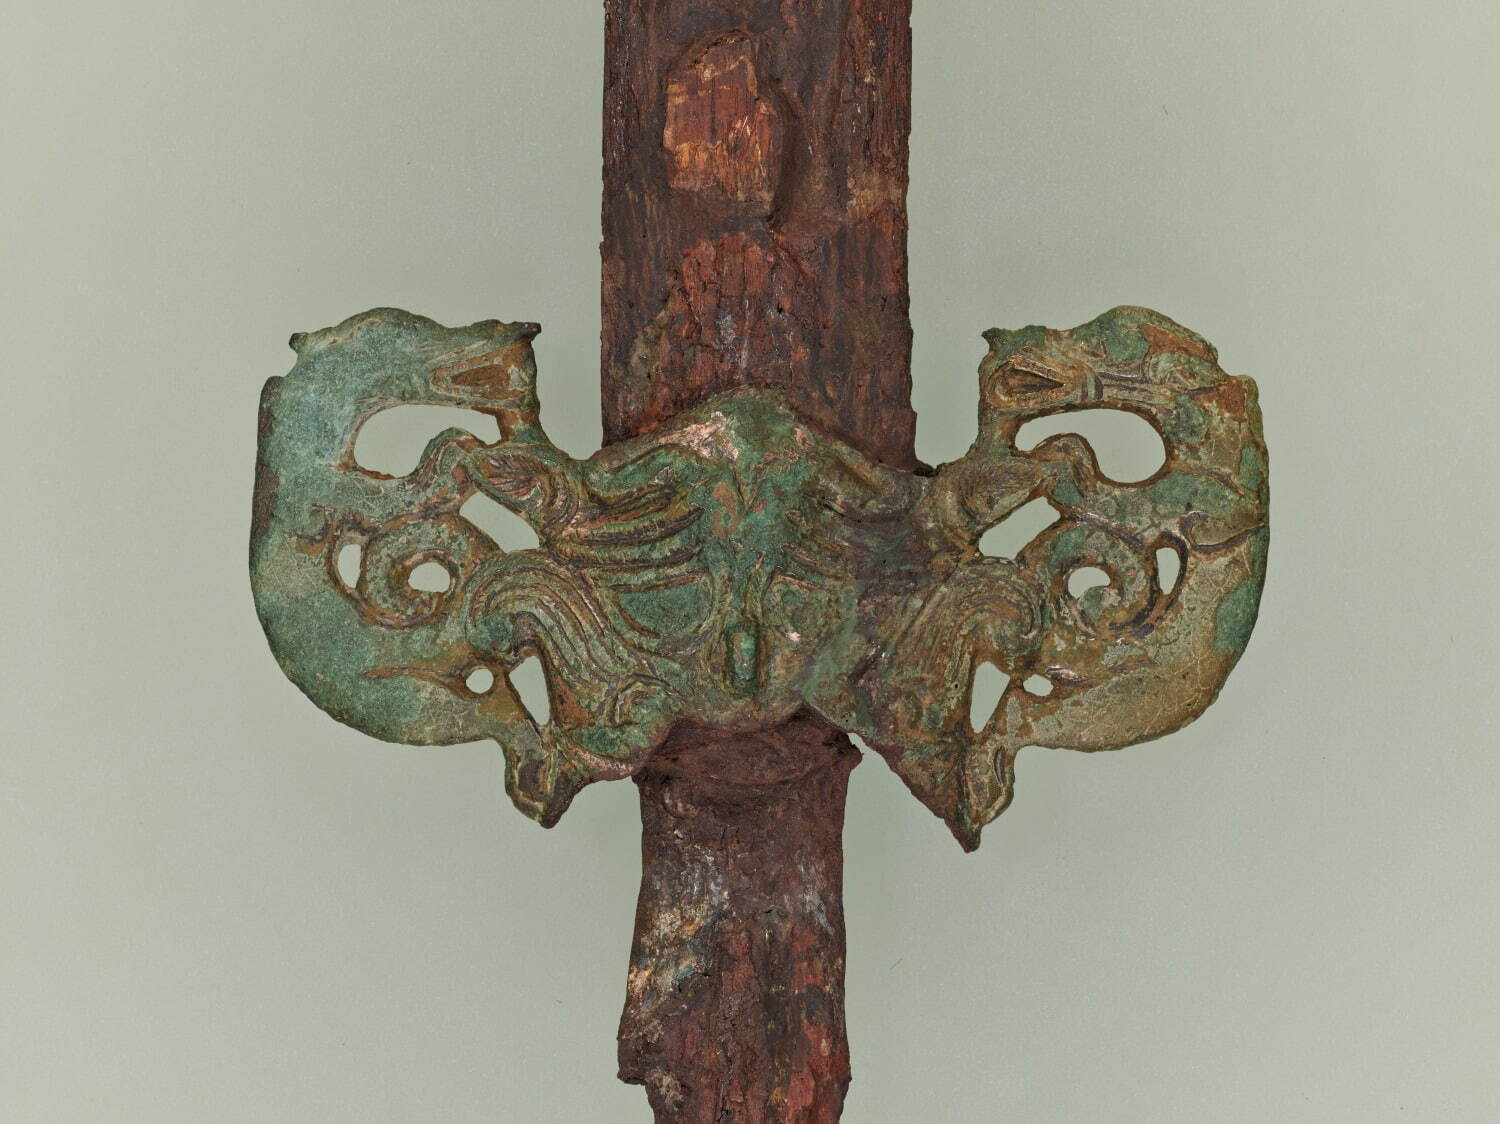 獣面装飾付鉄剣(じゅうめんそうしょくつきてっけん)
推定朝鮮 1世紀